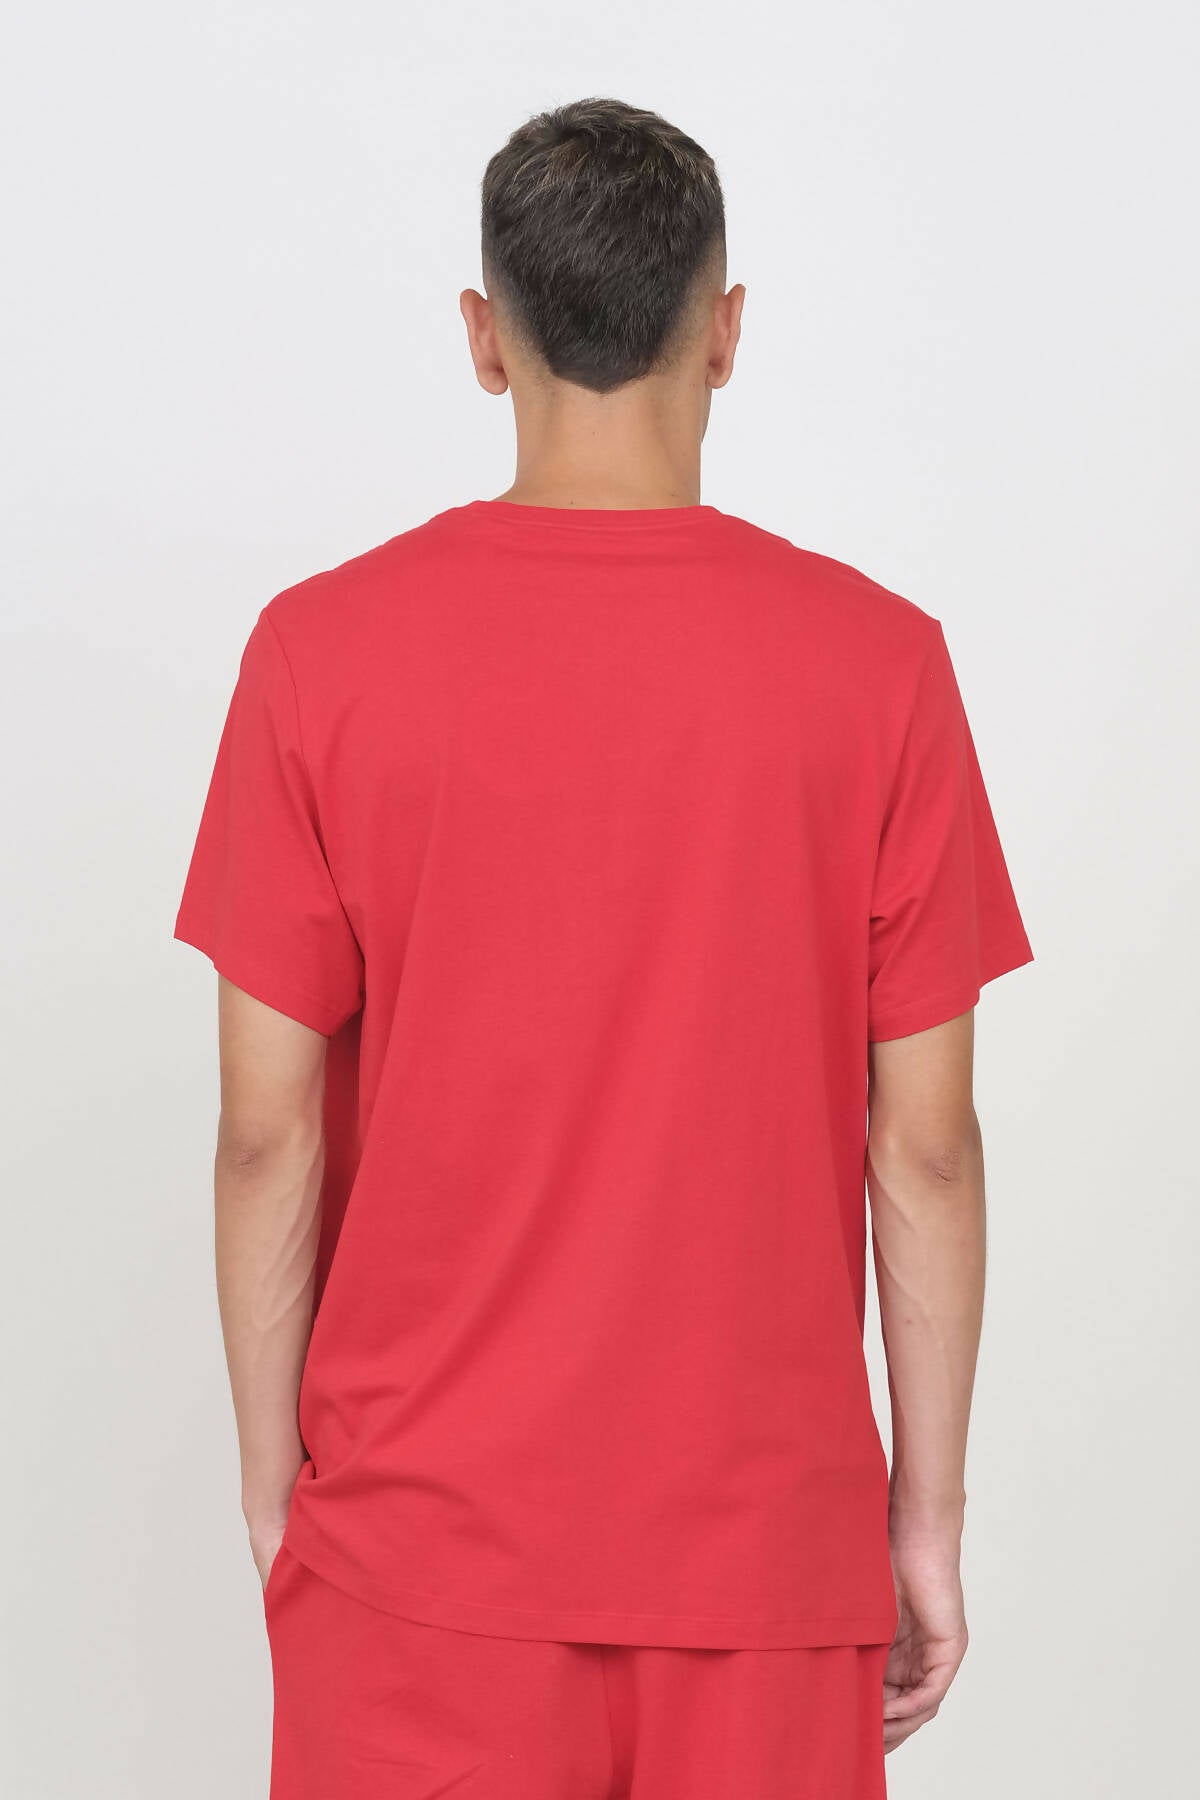 Rundhals-T-Shirt Rot